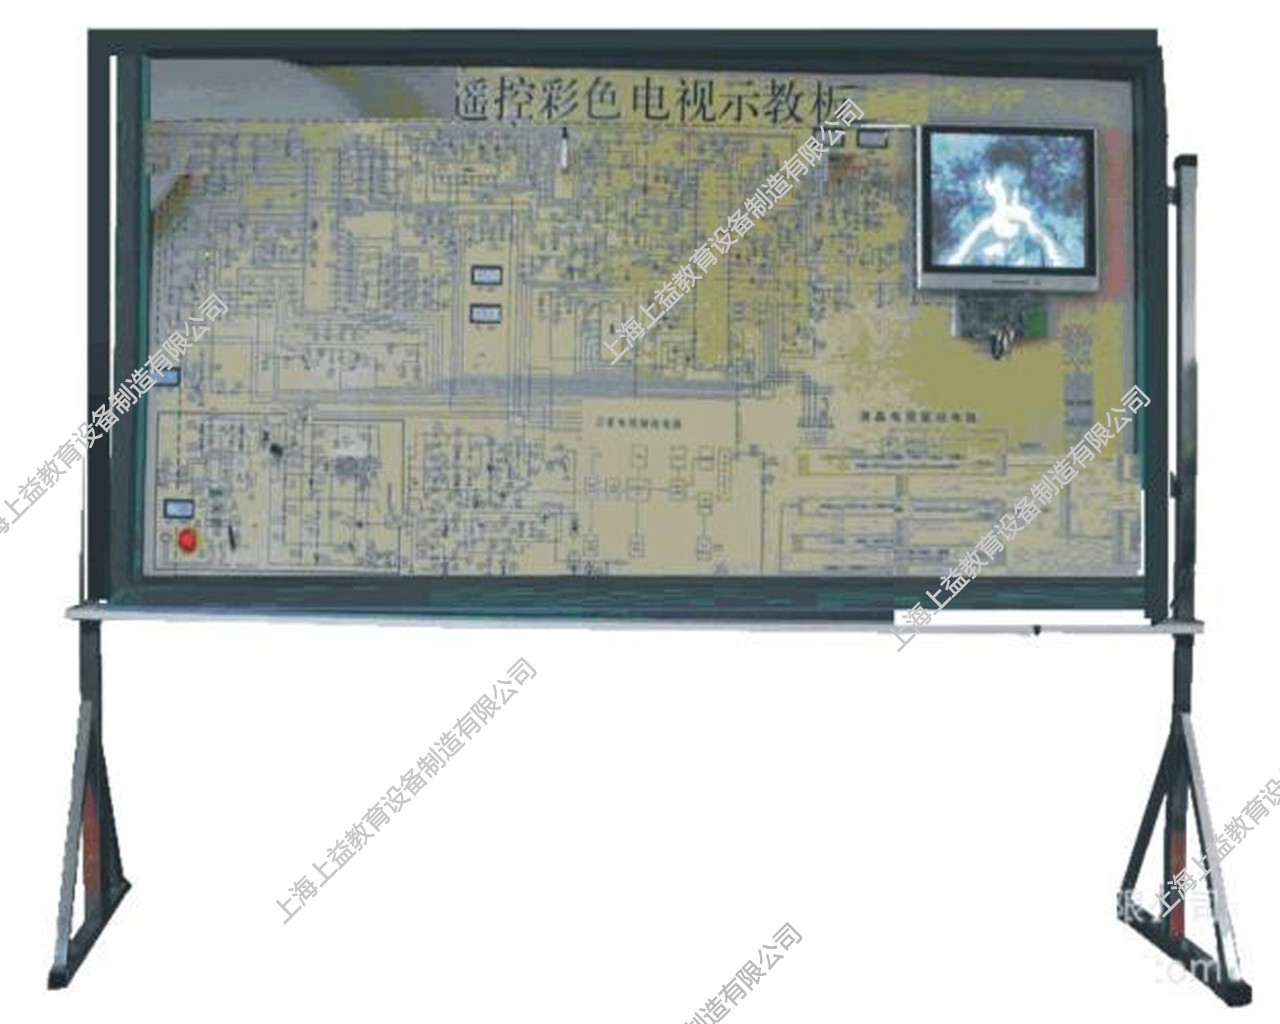 SYJYD-01 遥控彩色液晶电视示教板